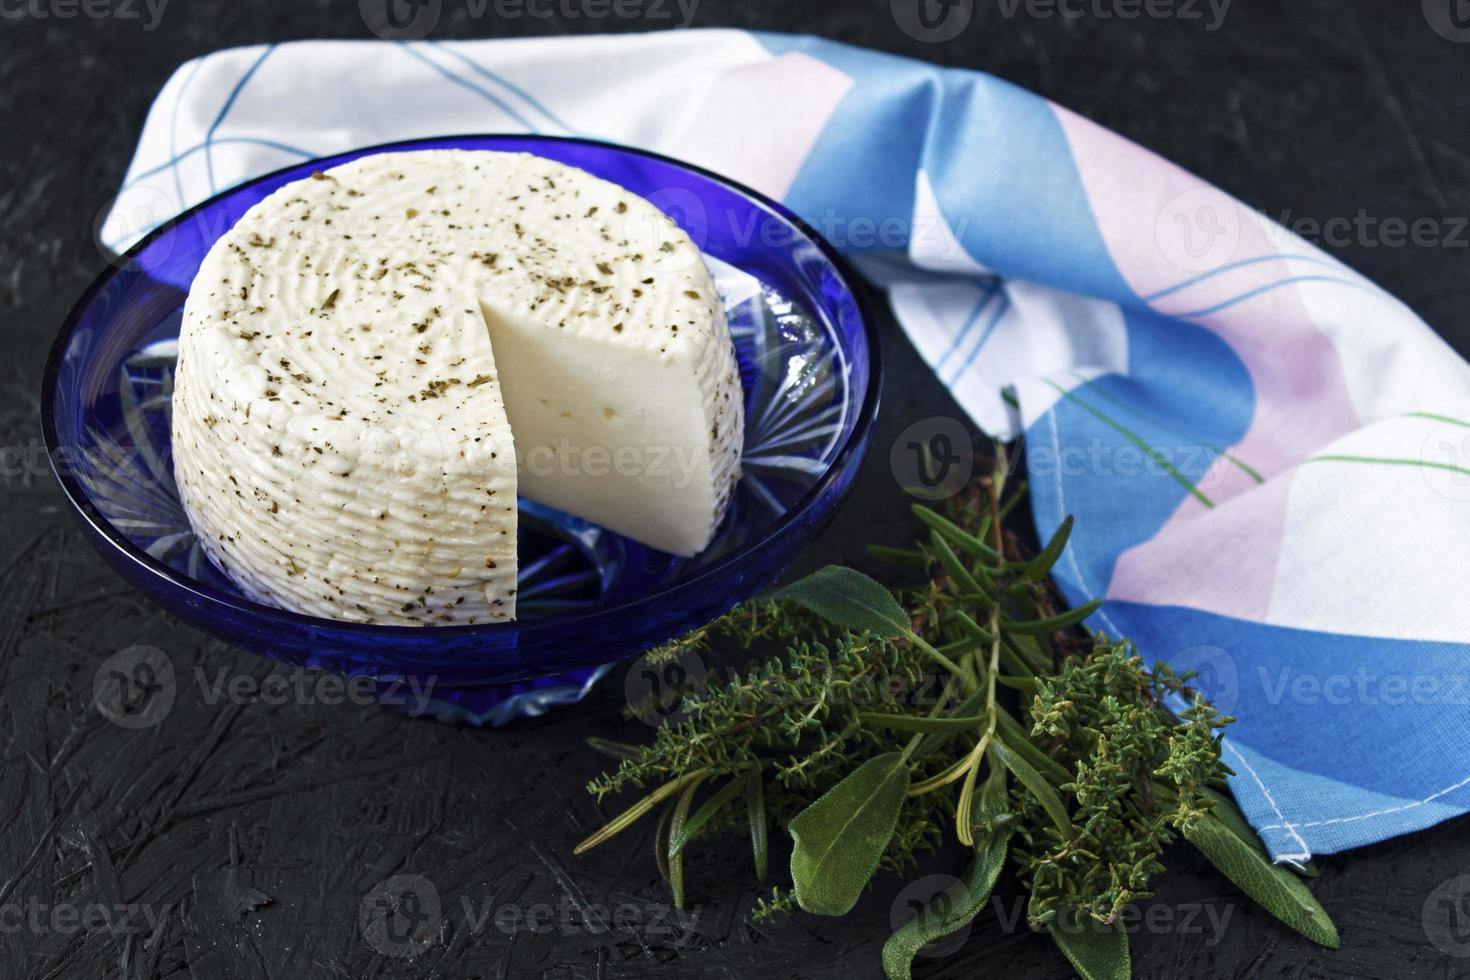 weißer Käse auf einem Teller auf schwarzem Hintergrund und Serviette foto